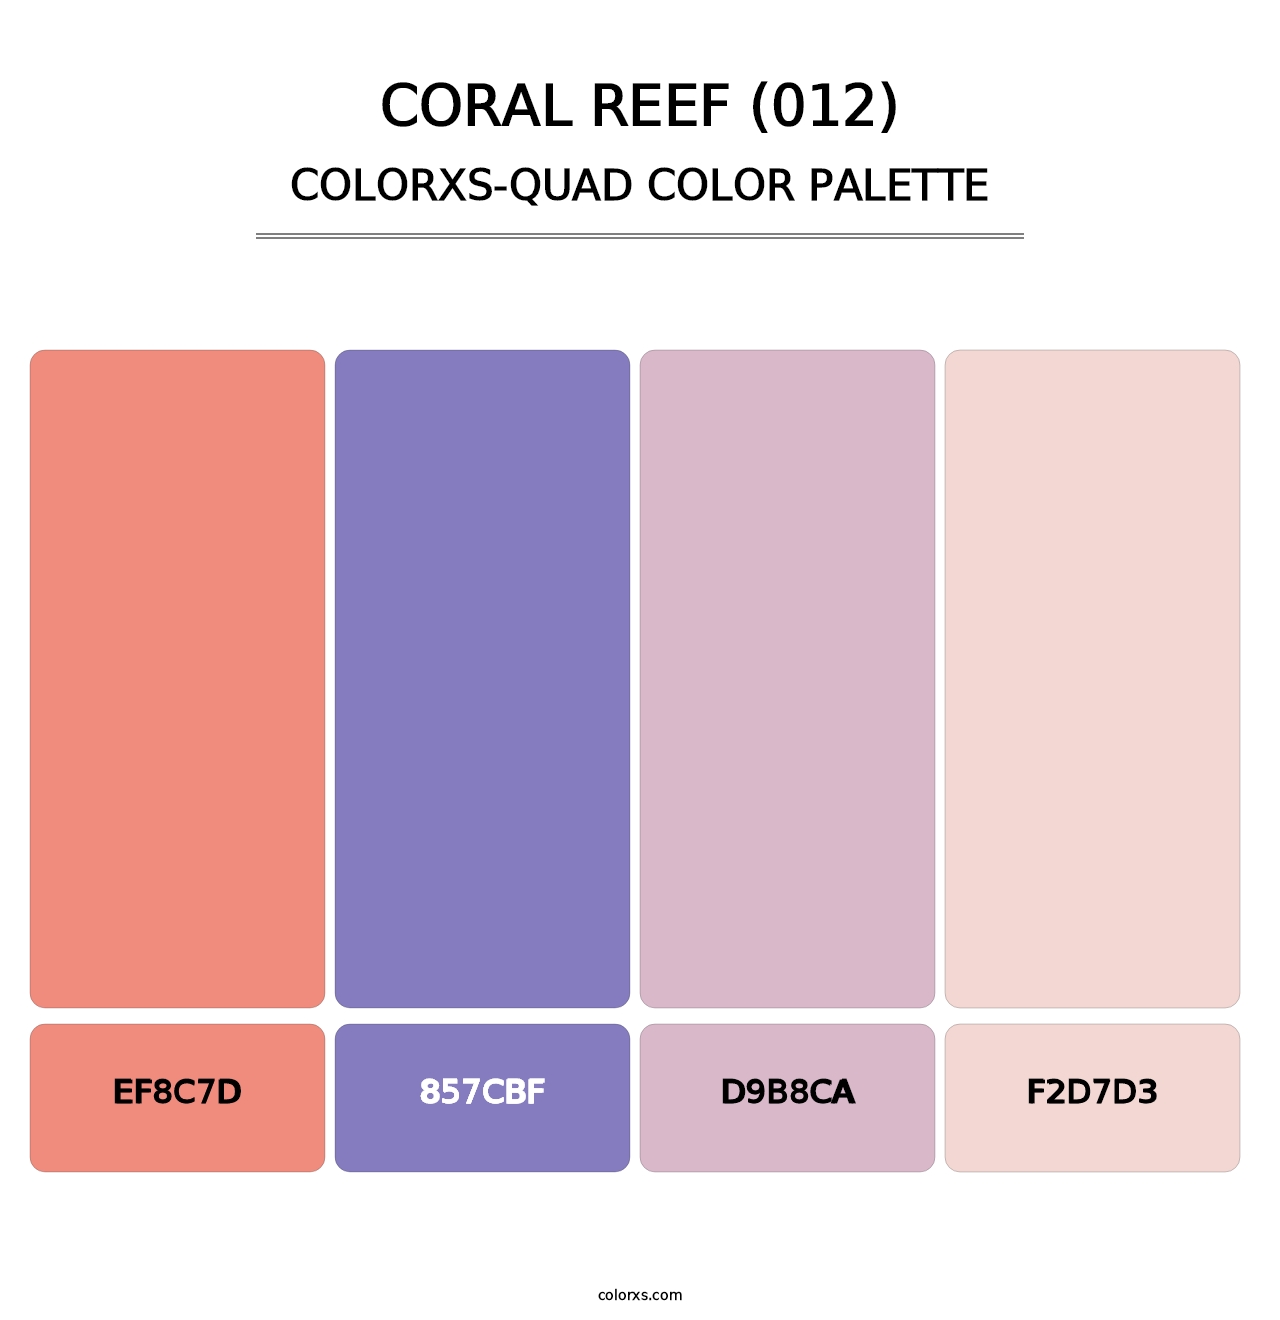 Coral Reef (012) - Colorxs Quad Palette